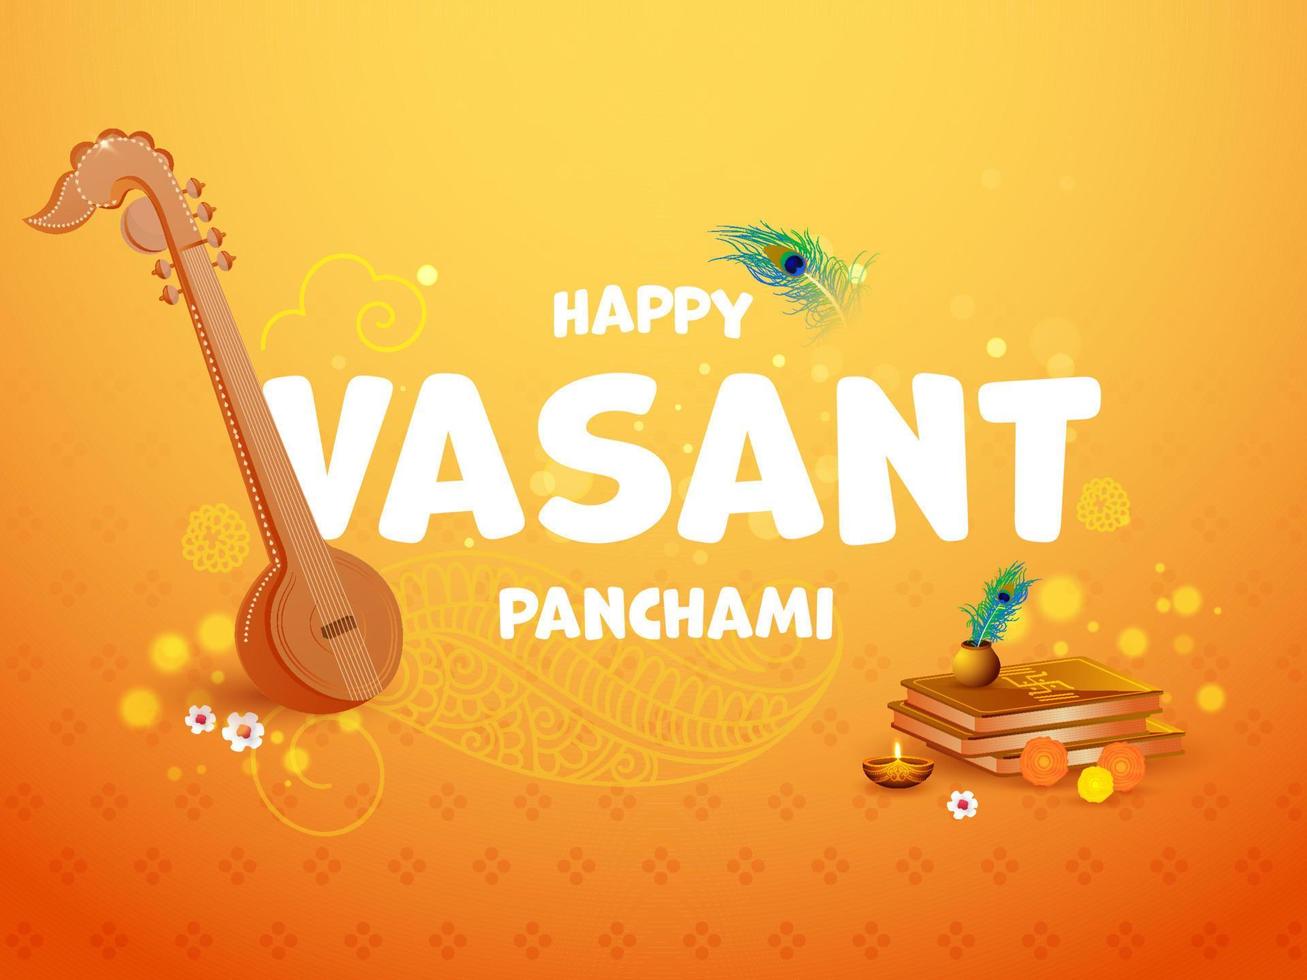 hapy Vasant Panchami Text mit veena Instrument, heilig Bücher, Blumen, zündete Öl Lampe auf Gradient Orange Hintergrund. vektor